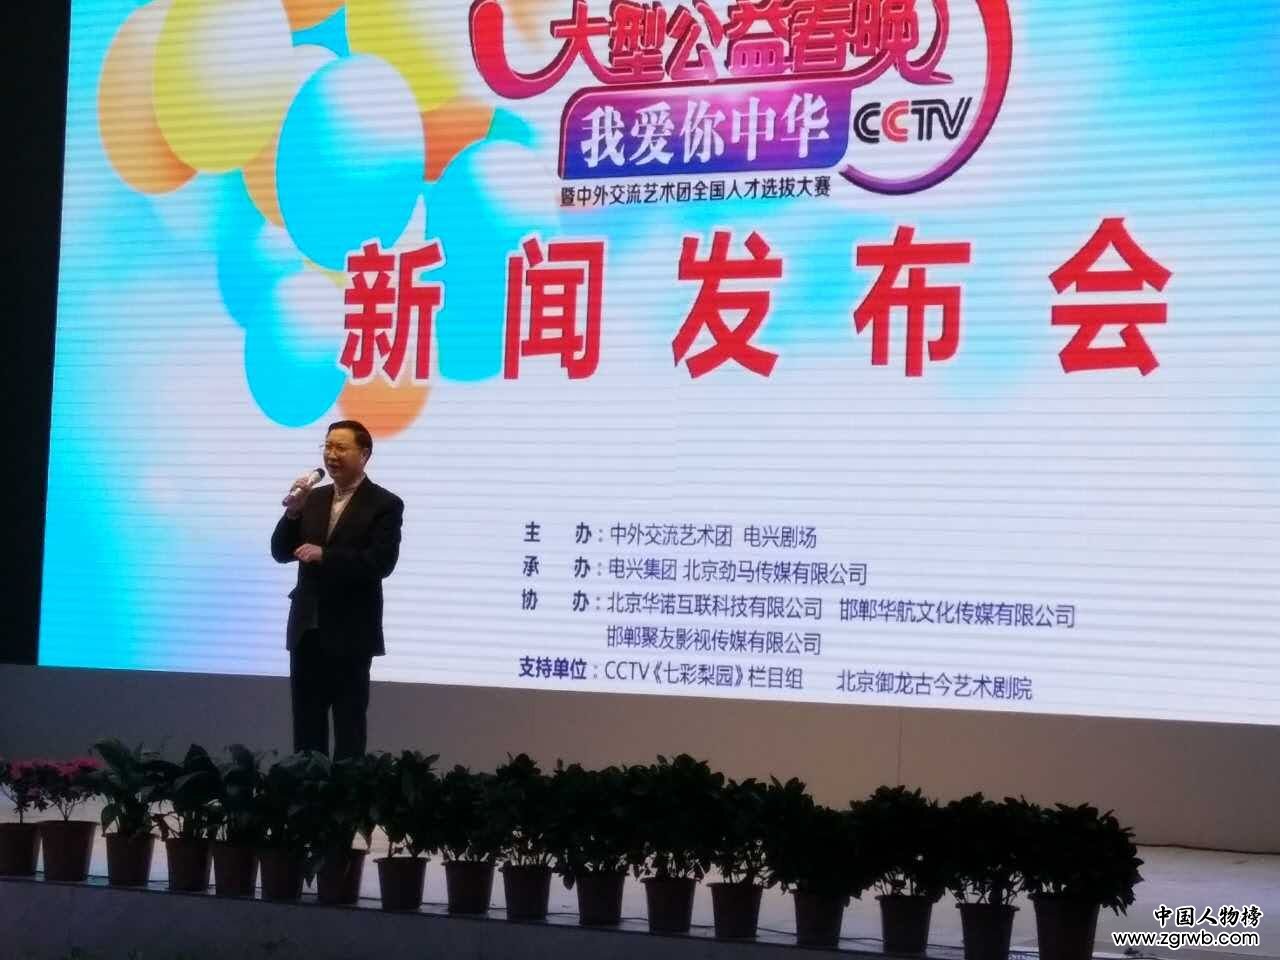 “我爱你中华”大型公益春晚暨人才选拔新闻发布会在魏县召开